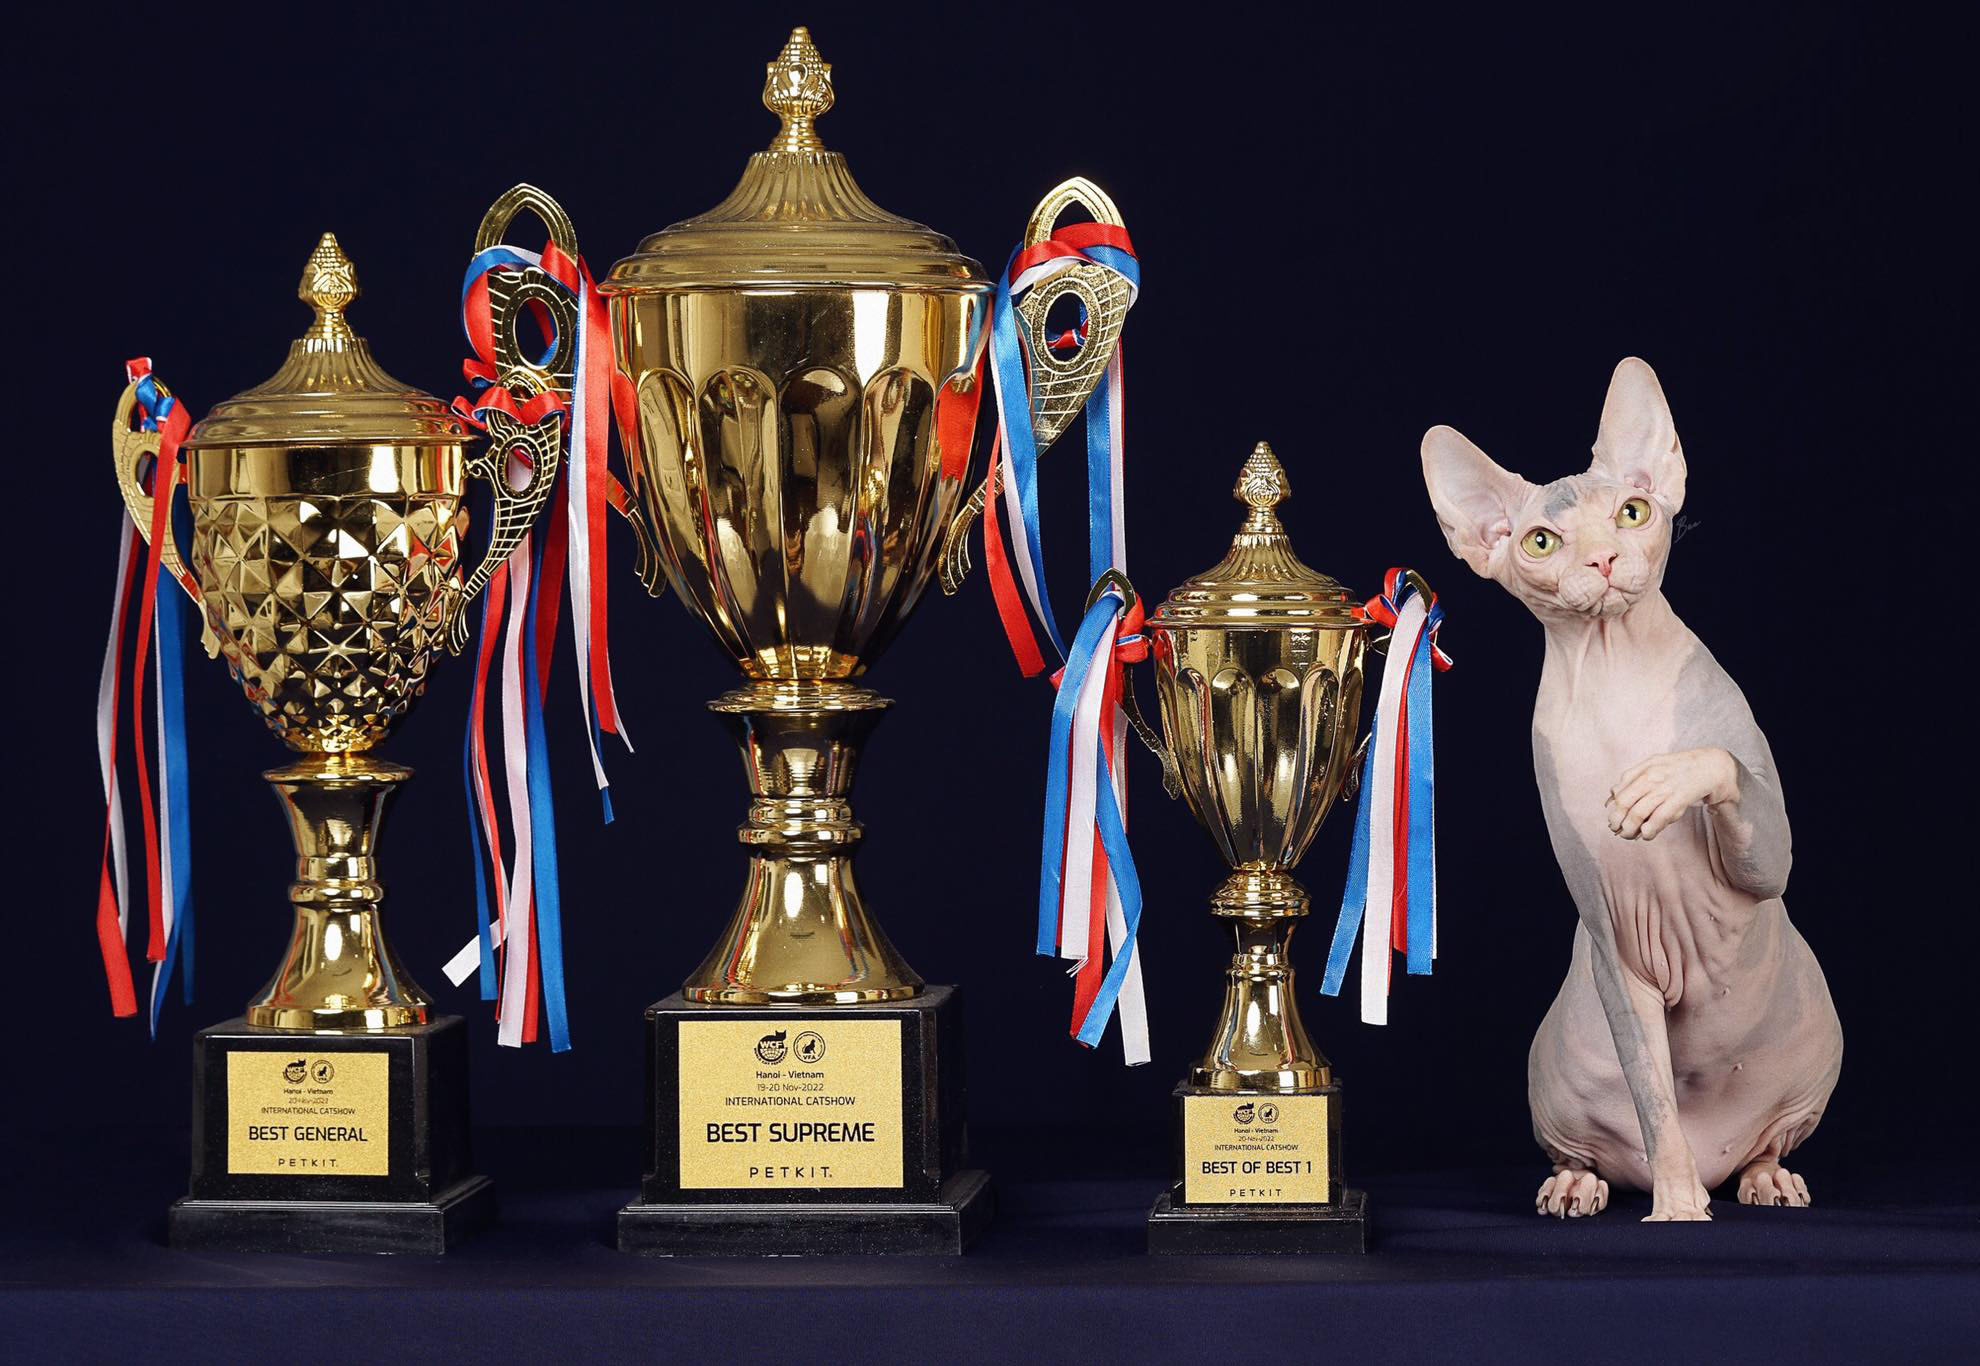 Thí sinh mèo có tên Orange thắng giải Best Supreme giành ngôi hoa hậu mèo năm 2022